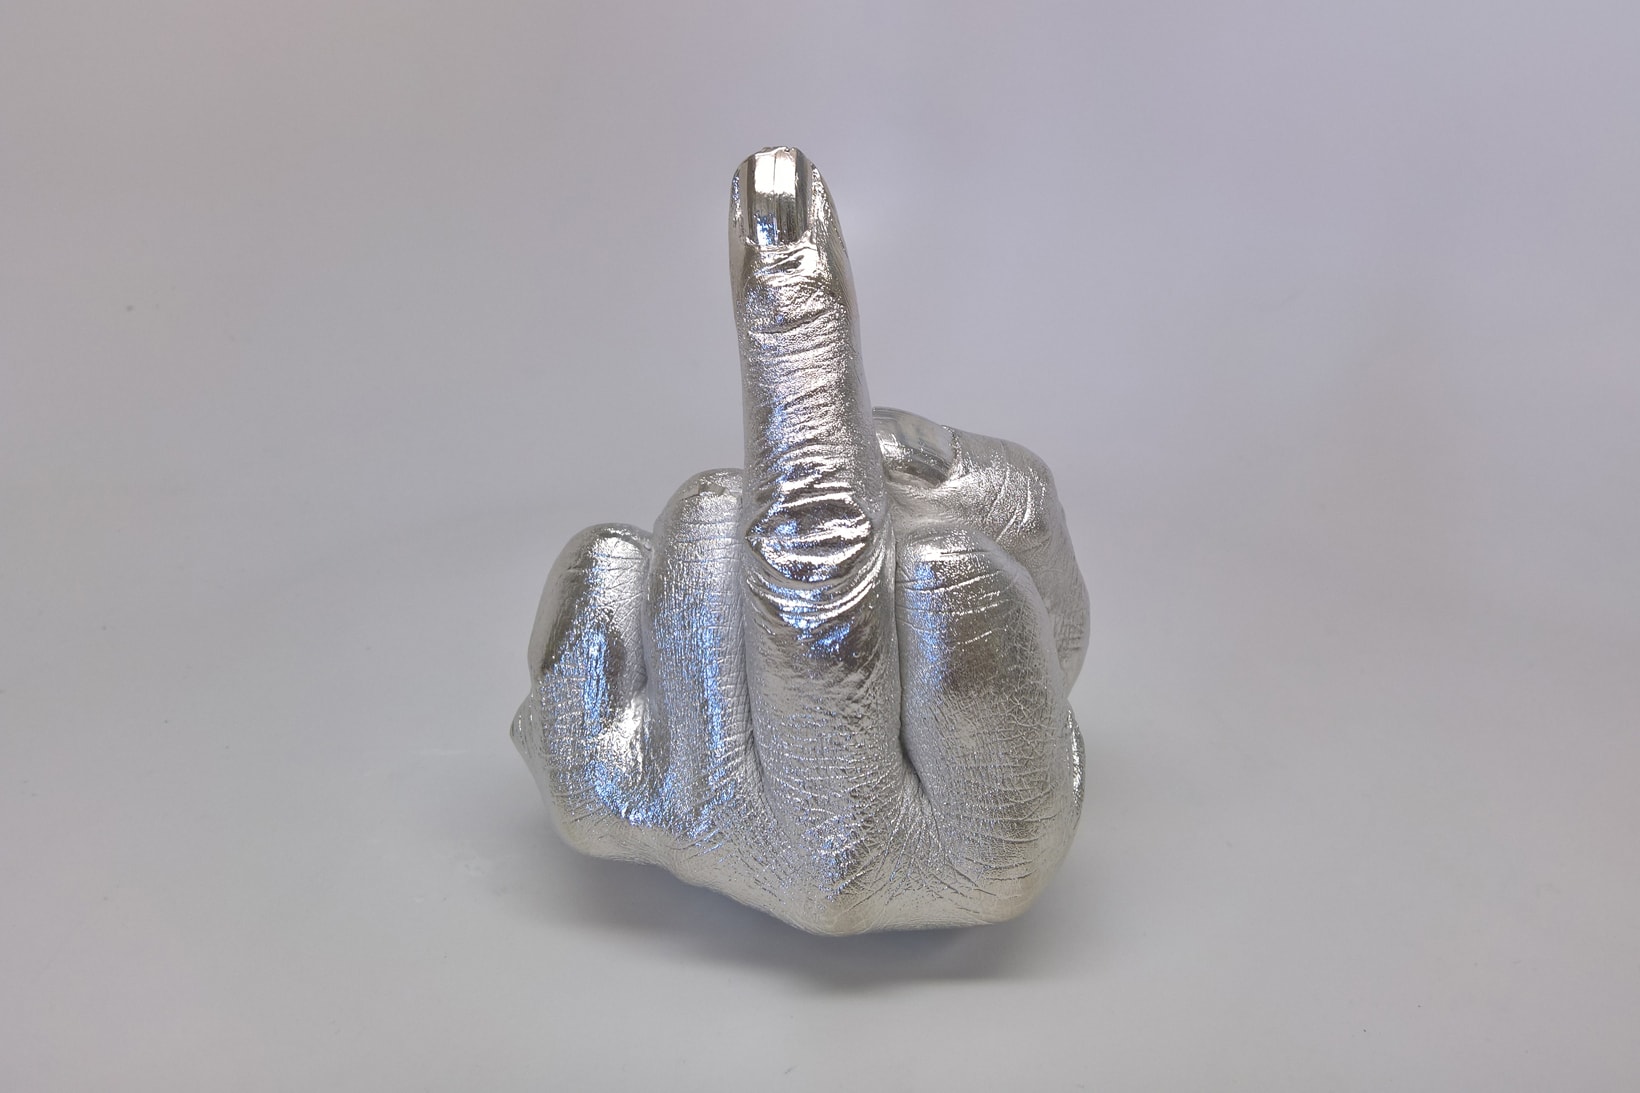 Ai Weiwei Public Art Fund eBay for Charity Art Artwork Print Sculpture